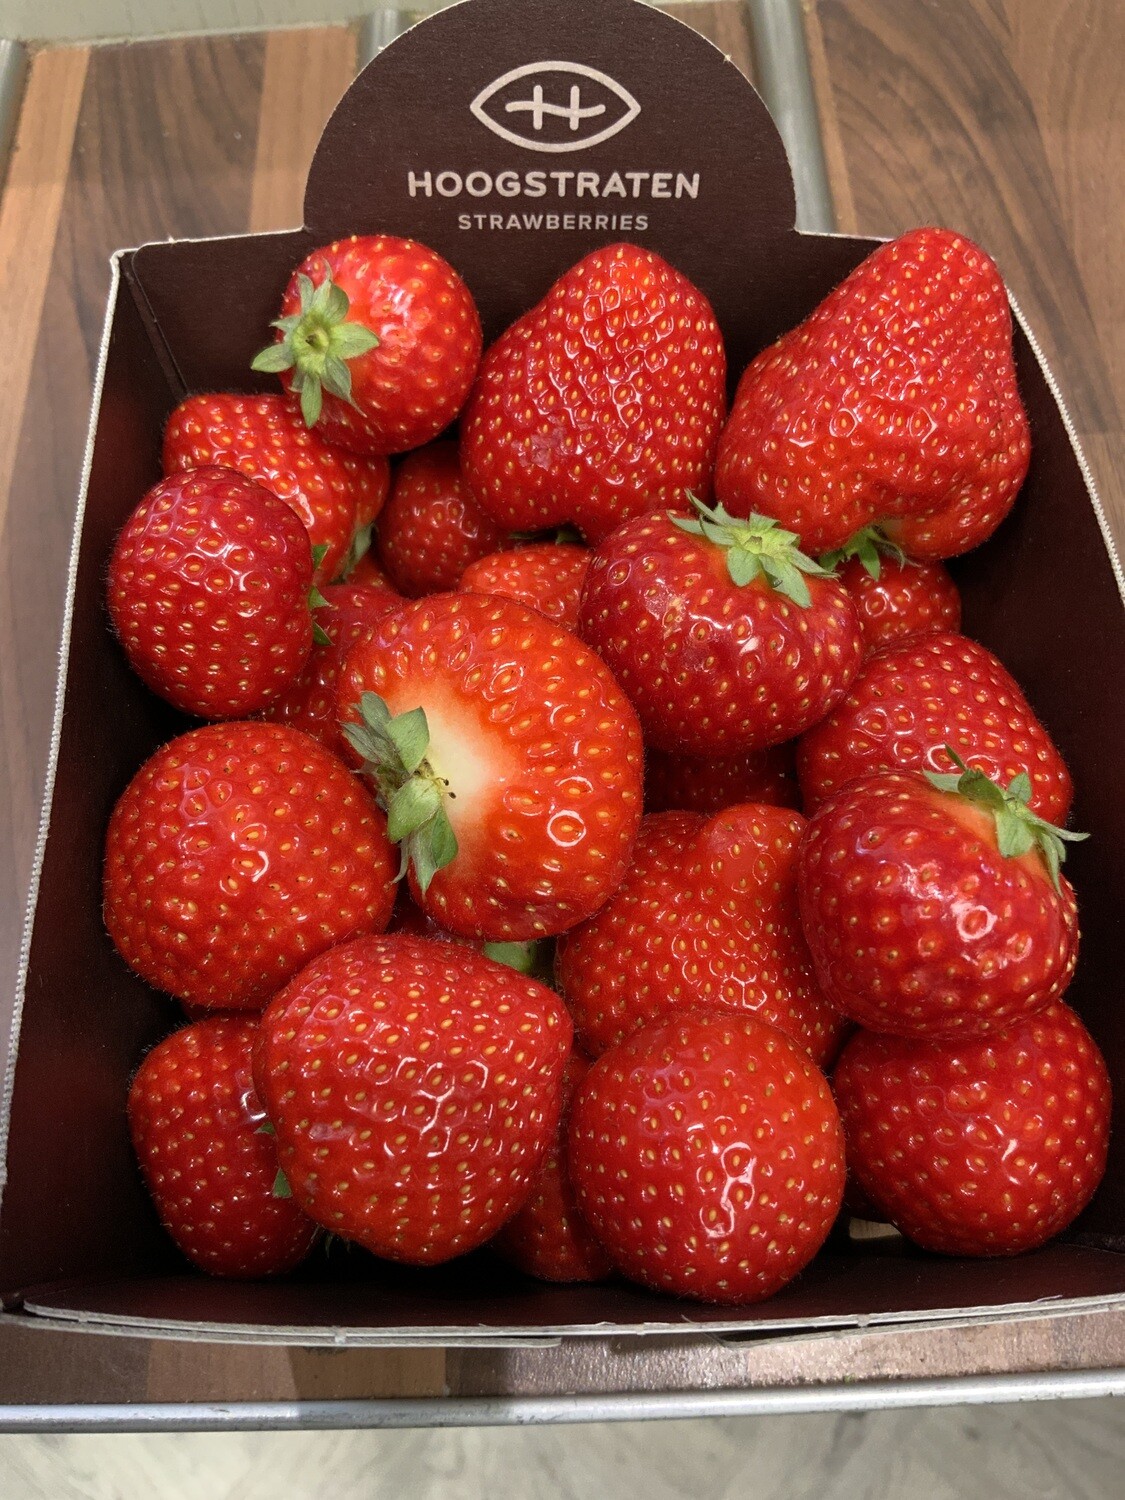 Strawberries.   450g punnets. Belgium